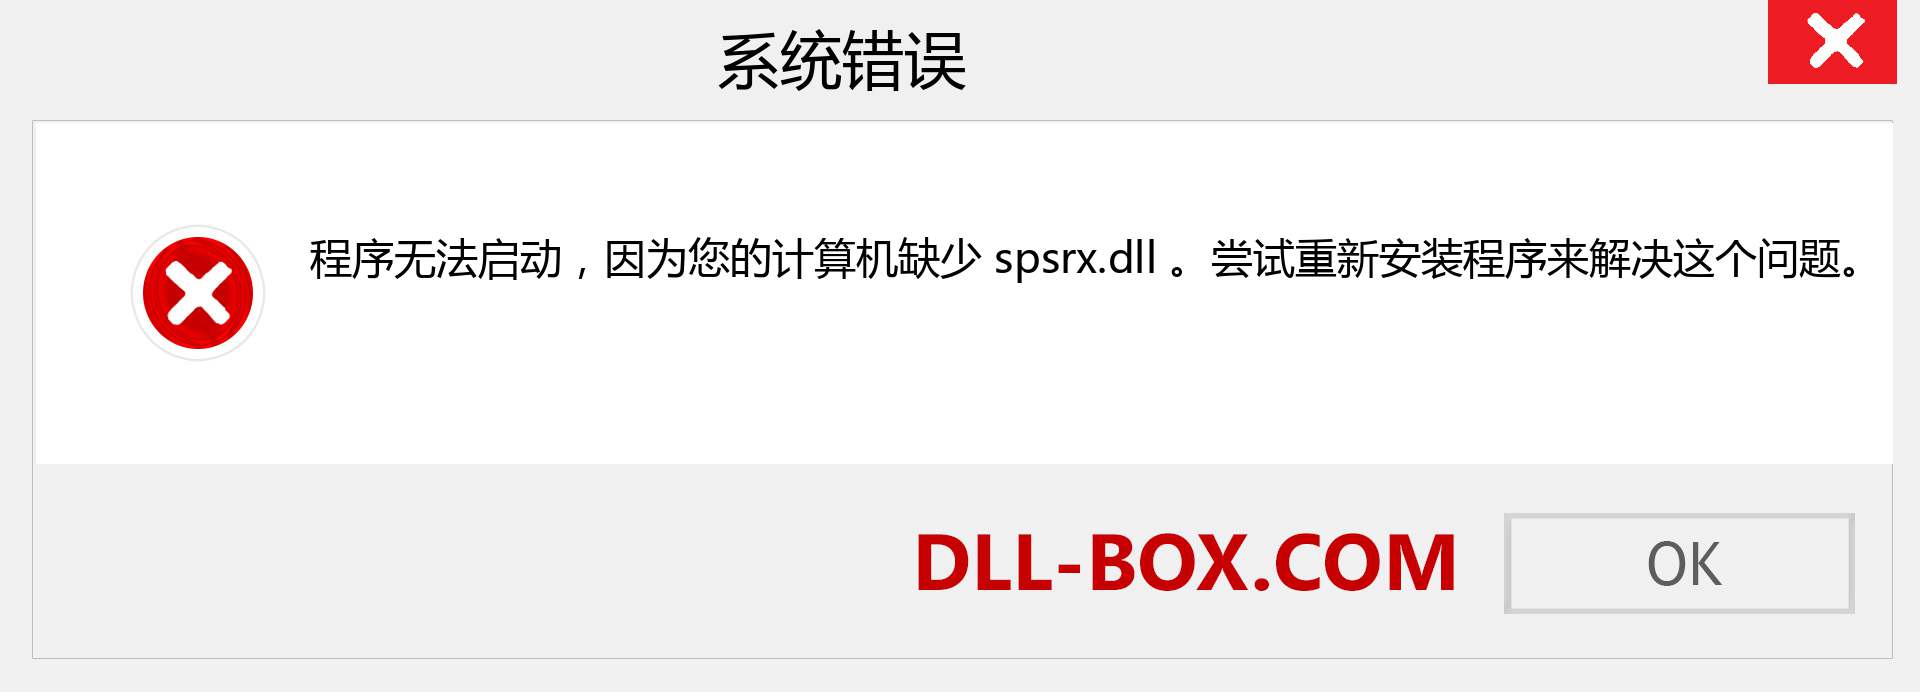 spsrx.dll 文件丢失？。 适用于 Windows 7、8、10 的下载 - 修复 Windows、照片、图像上的 spsrx dll 丢失错误